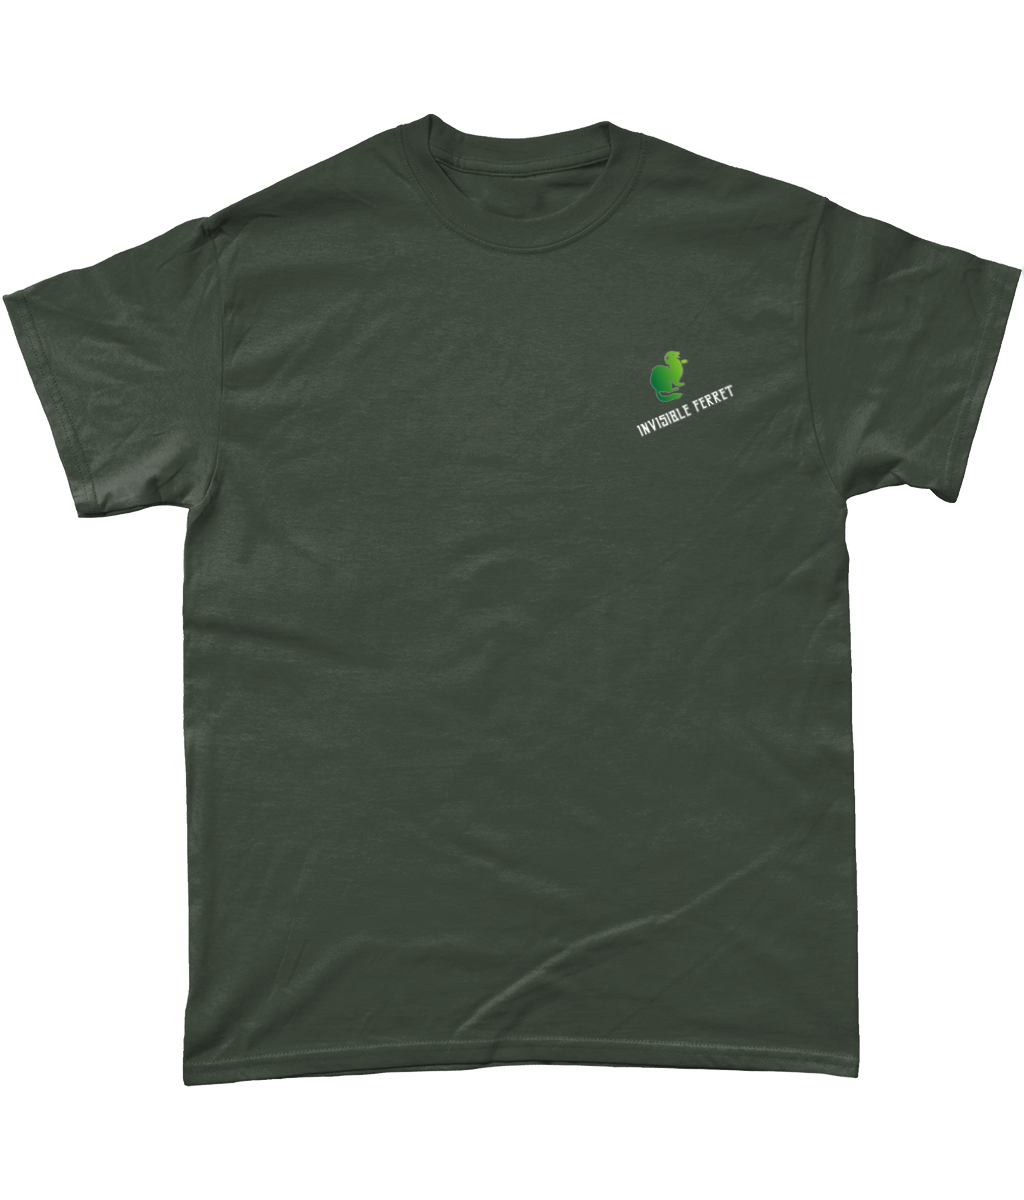 Catnip Trip -T-shirt